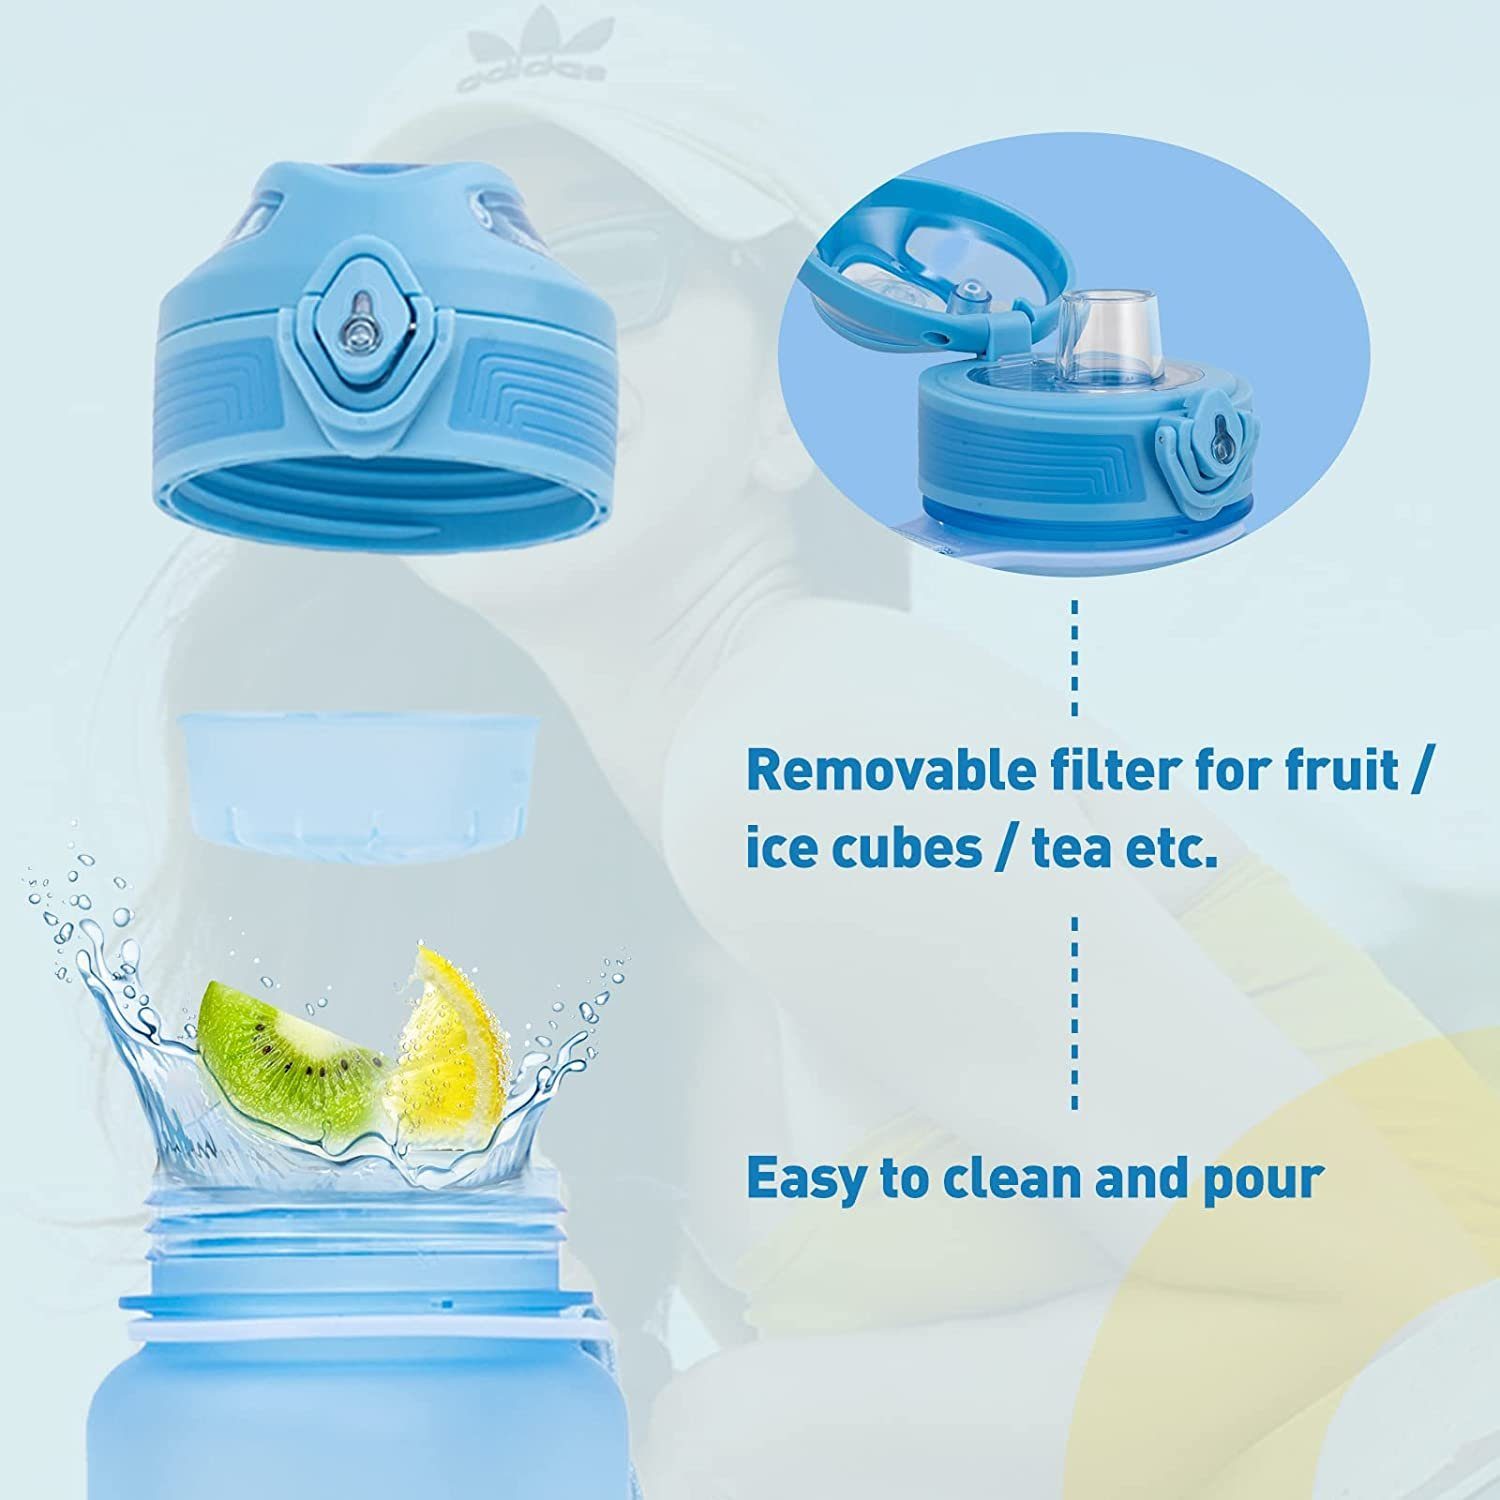 HITWAY Trinkflasche 1l hellblau - Wasserflasche HITWAY - BPA-Frei Auslaufsicher Trinkflasche